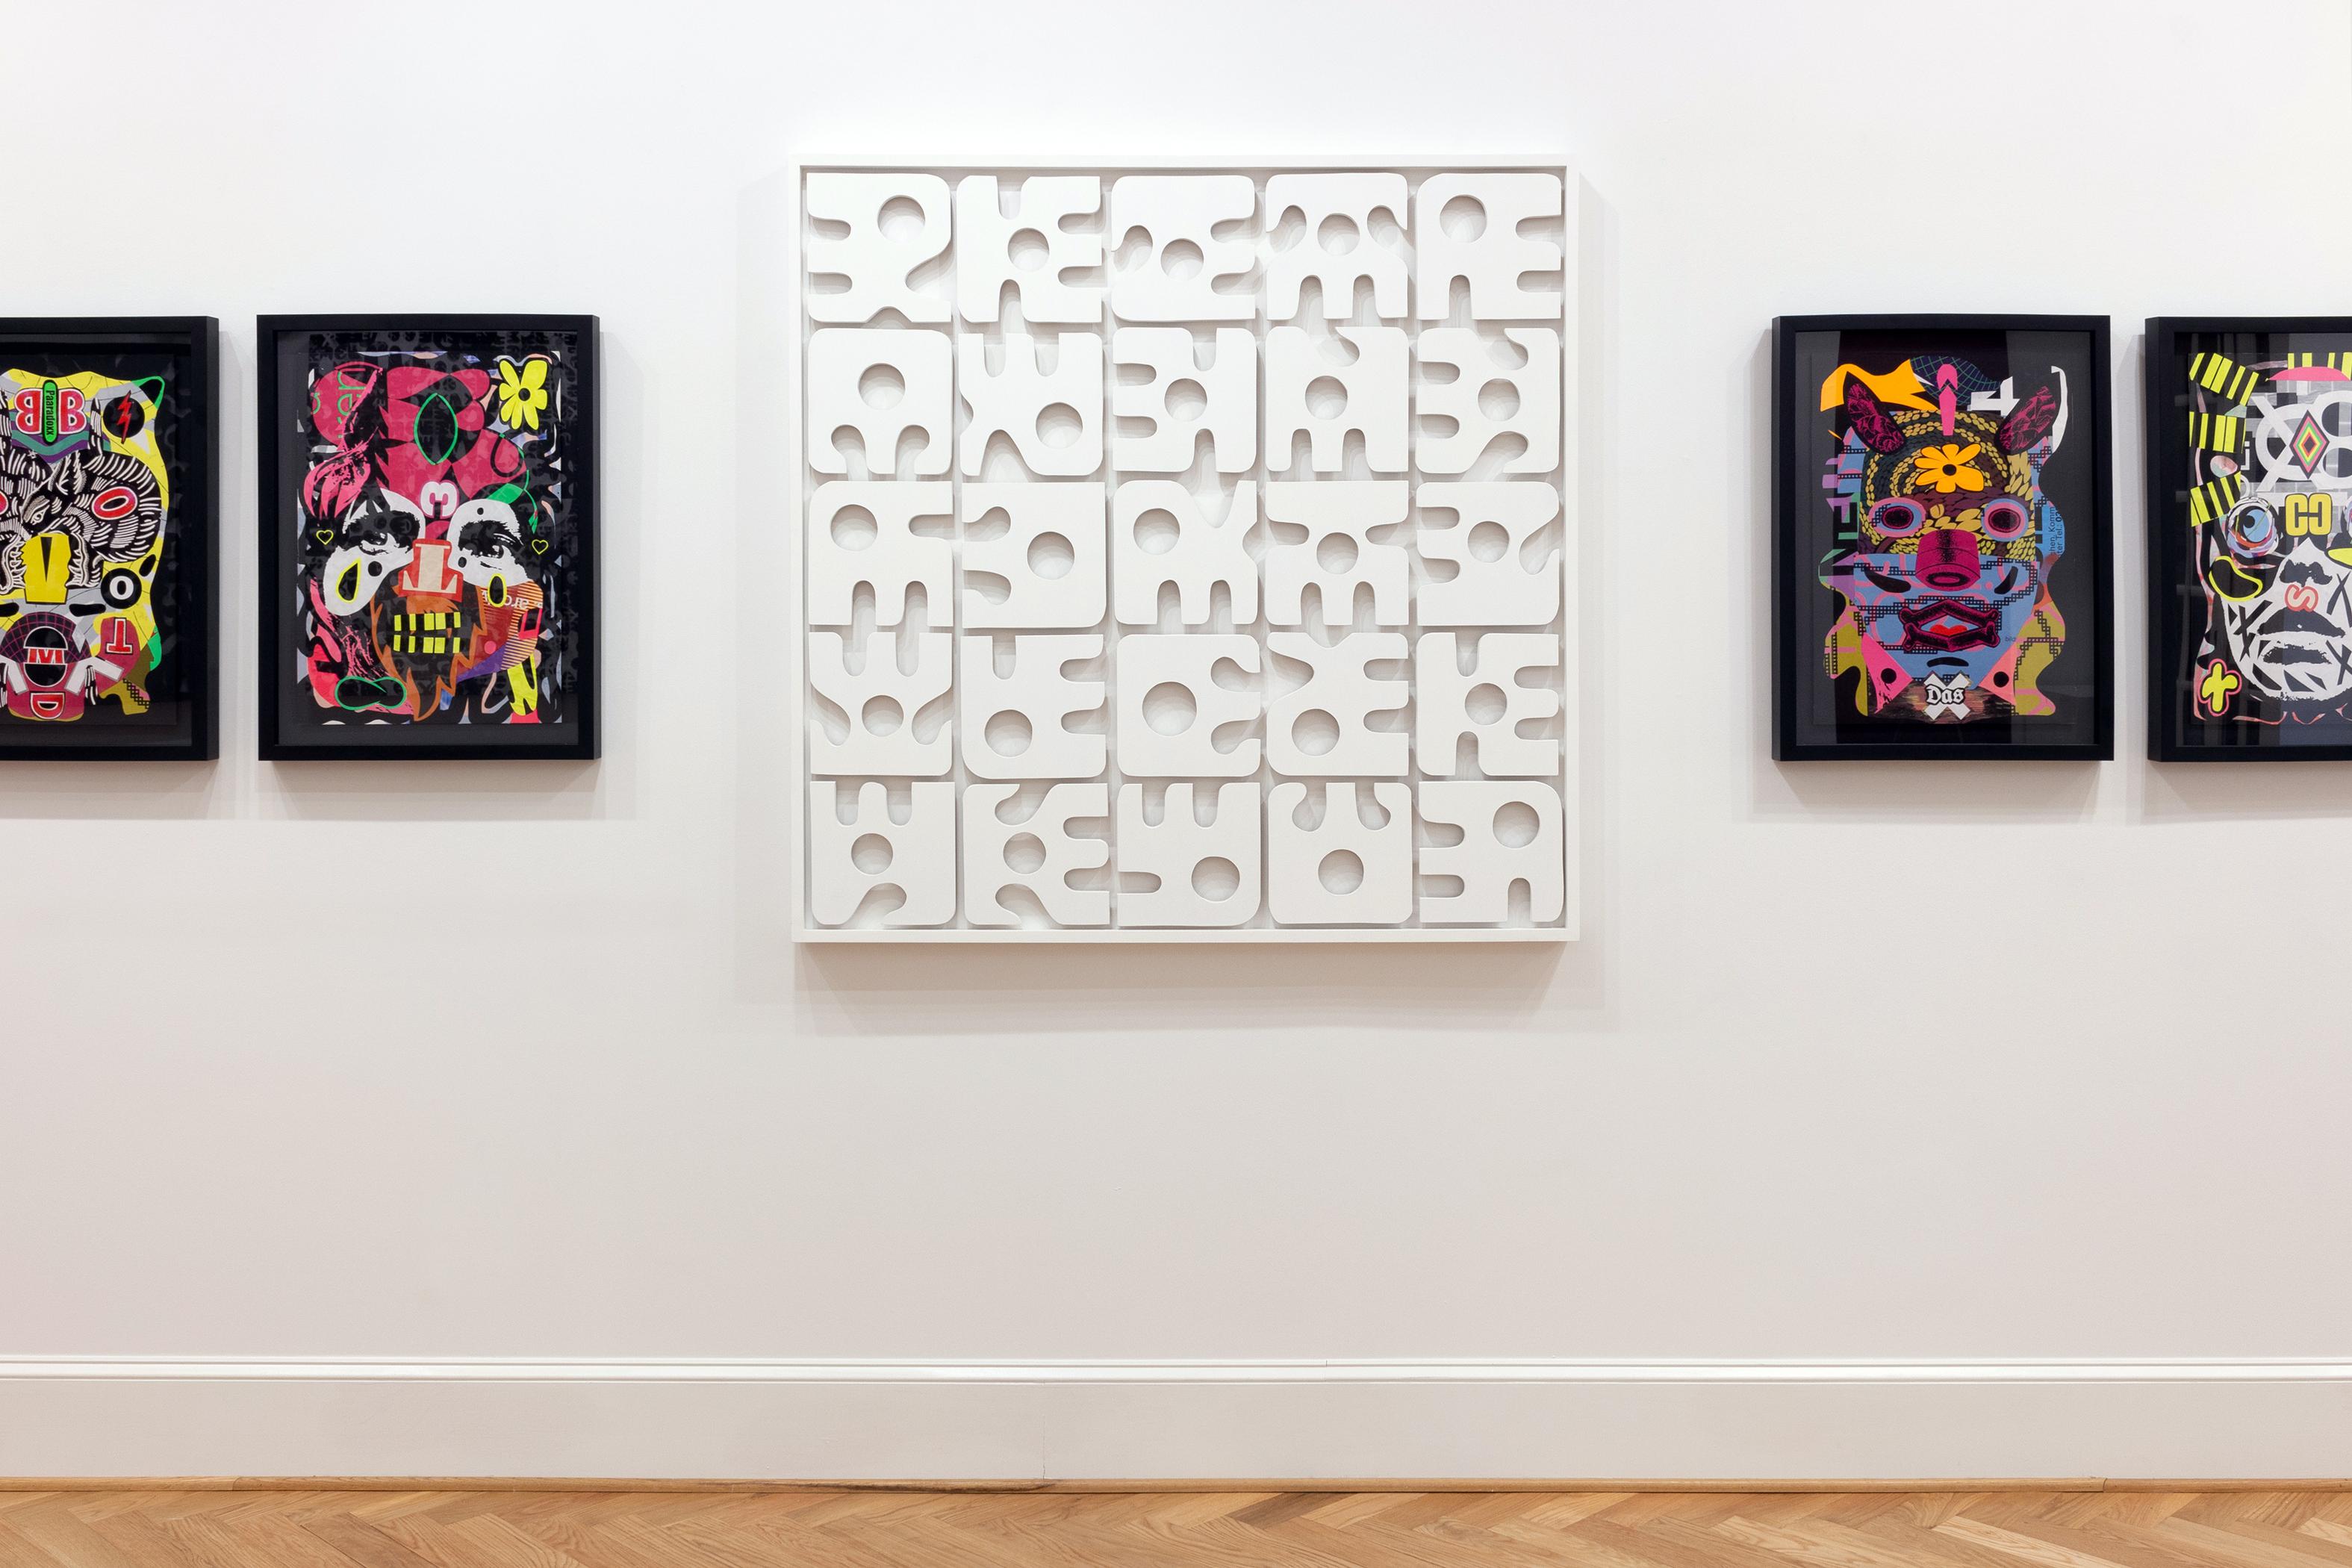 Dieses abstrakte Collage-Porträt zeigt Farbtöne in Gelb, Lila, Rosa und Orange.

Dieses Werk ist ungerahmt 23,25 x 16,5 cm groß und gerahmt 28 x 21 cm in einem dünnen schwarzen Rahmen.

Der in Kolumbien geborene und in Atlanta lebende Künstler